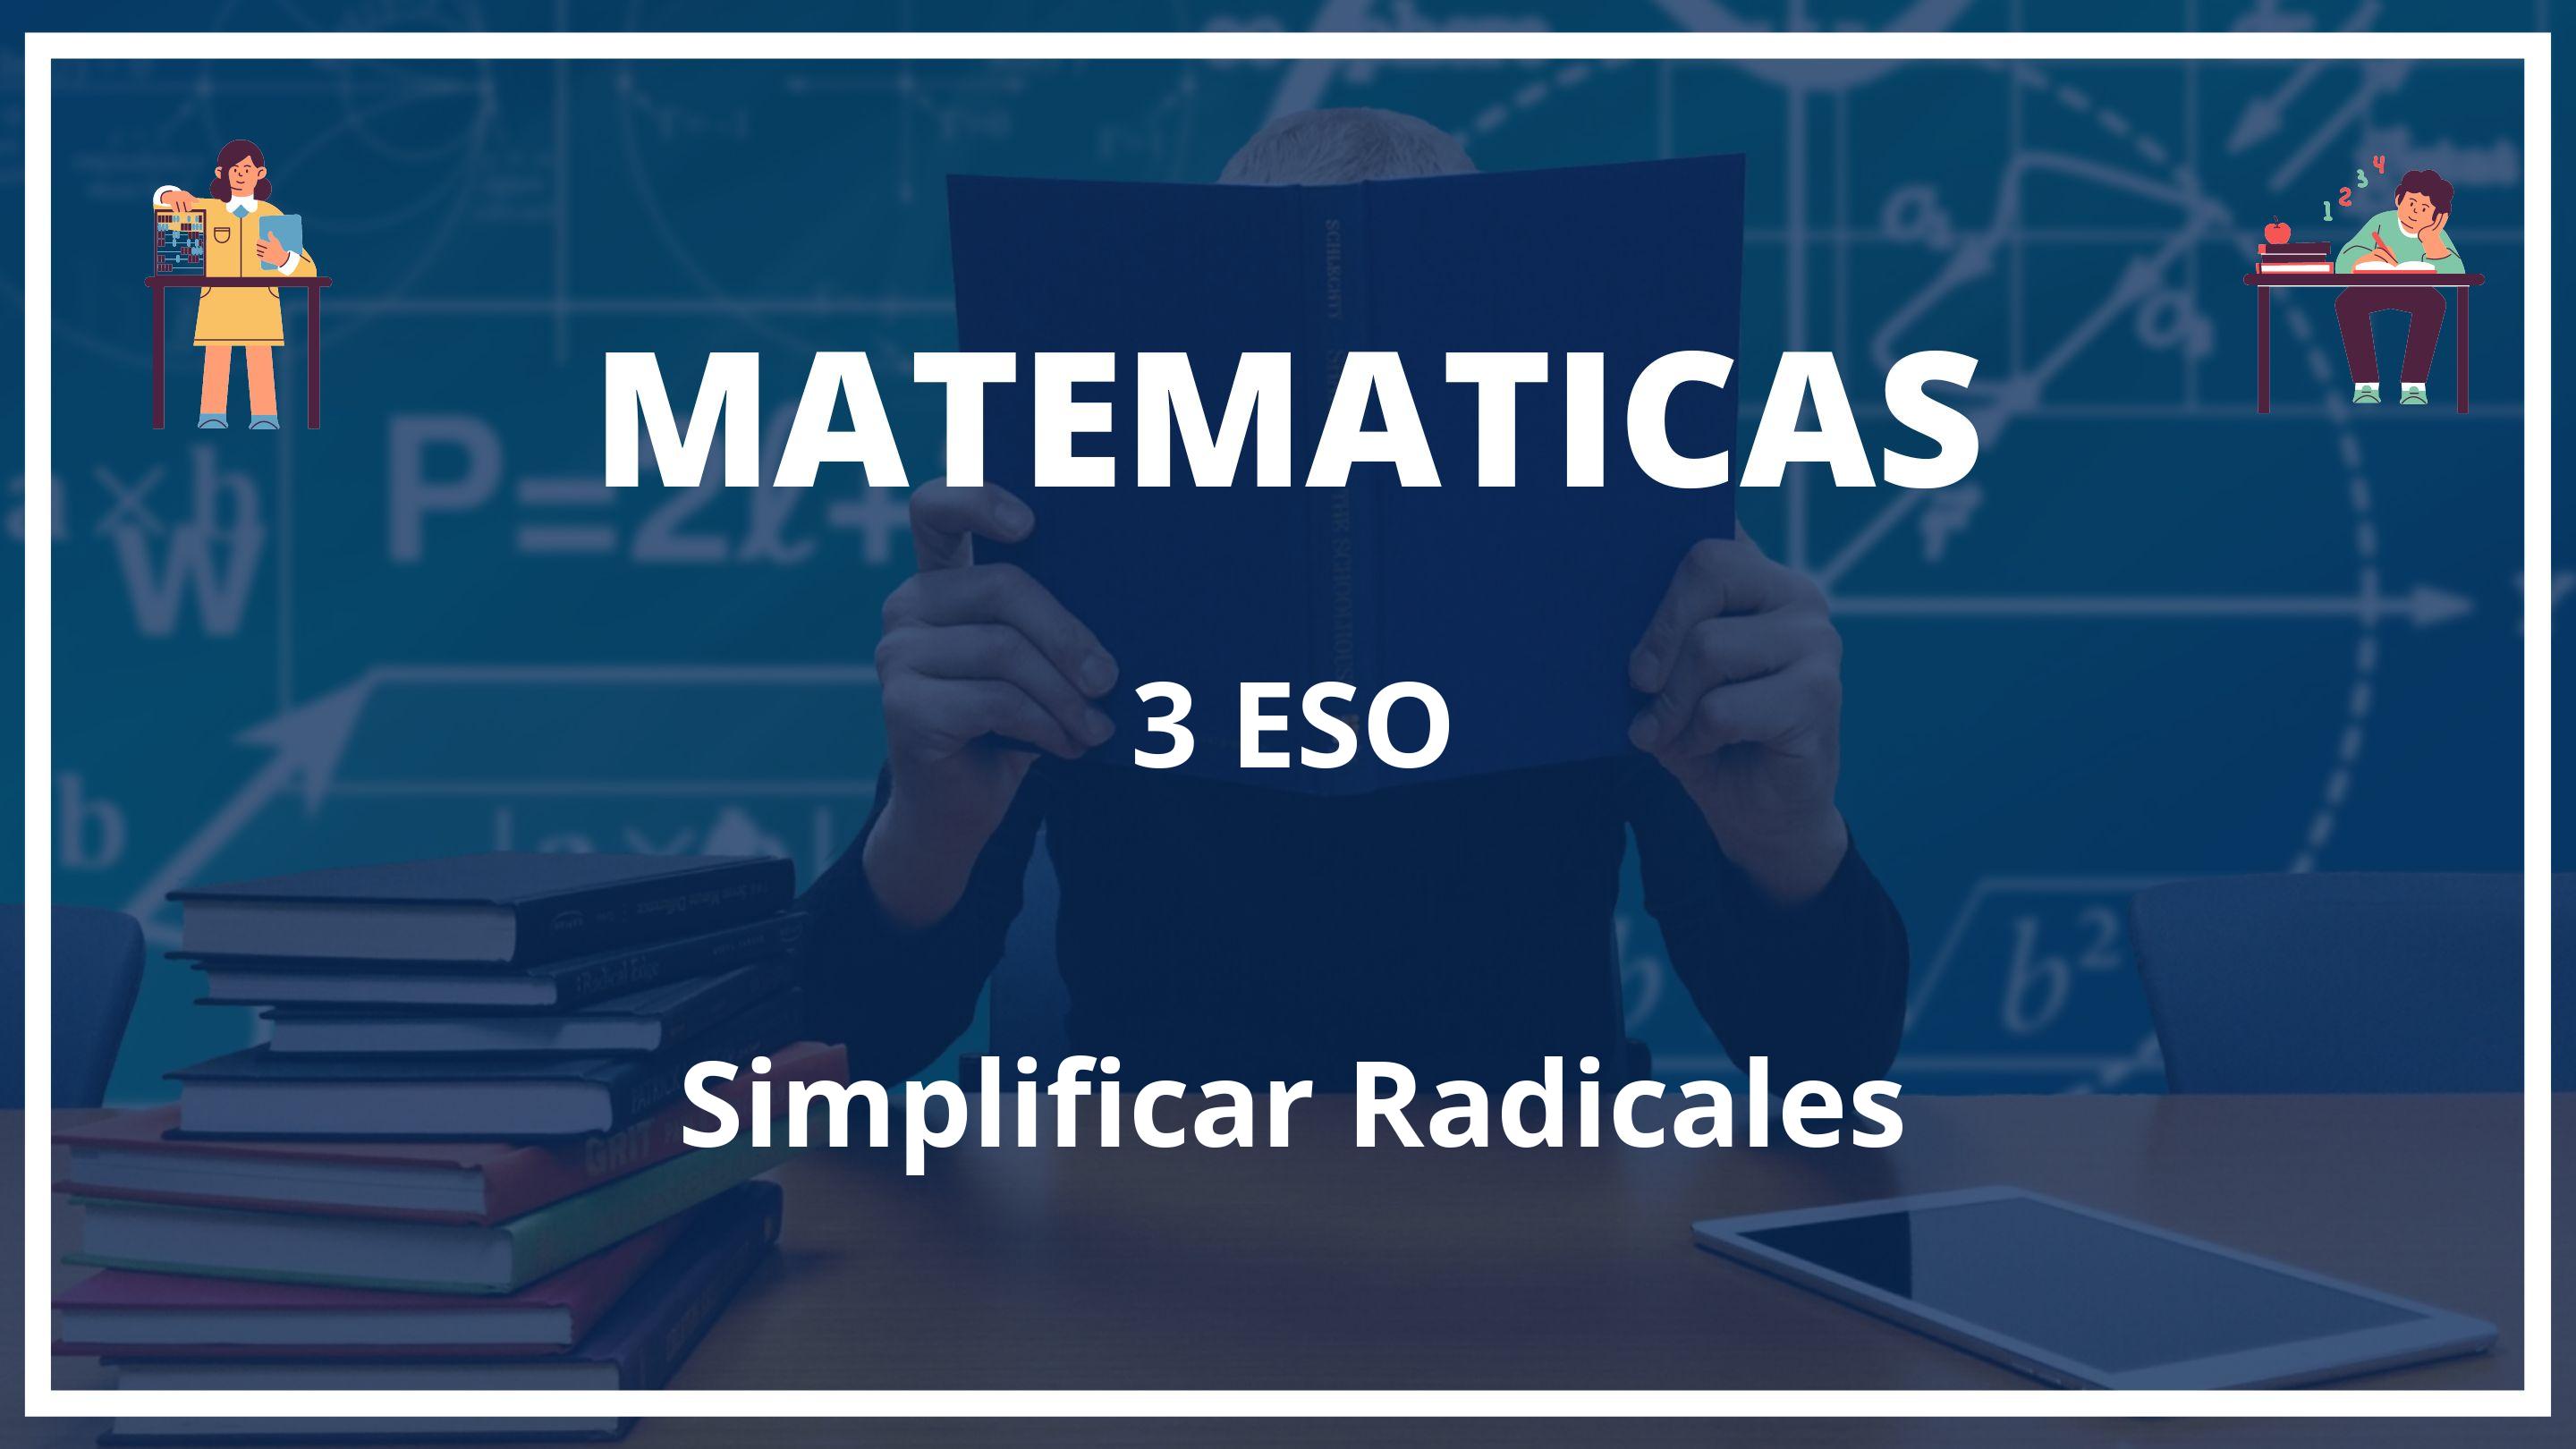 Simplificar Radicales 3 ESO